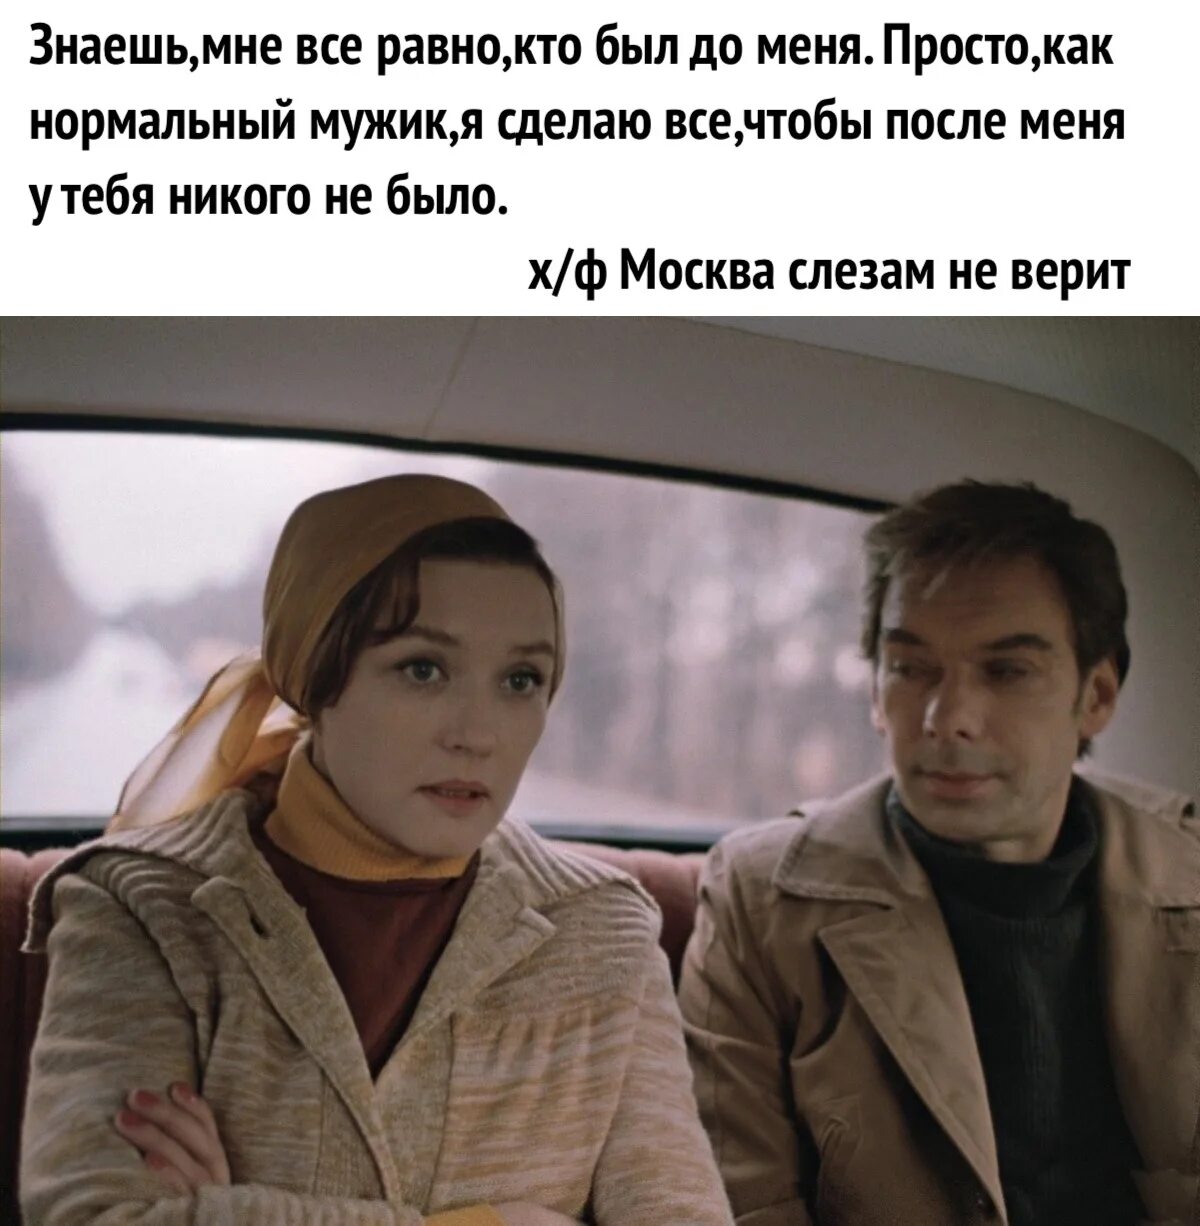 Цитаты из кинофильма Москва слезам не верит. Цитаты из Москва слезам не верит. Русские неважные